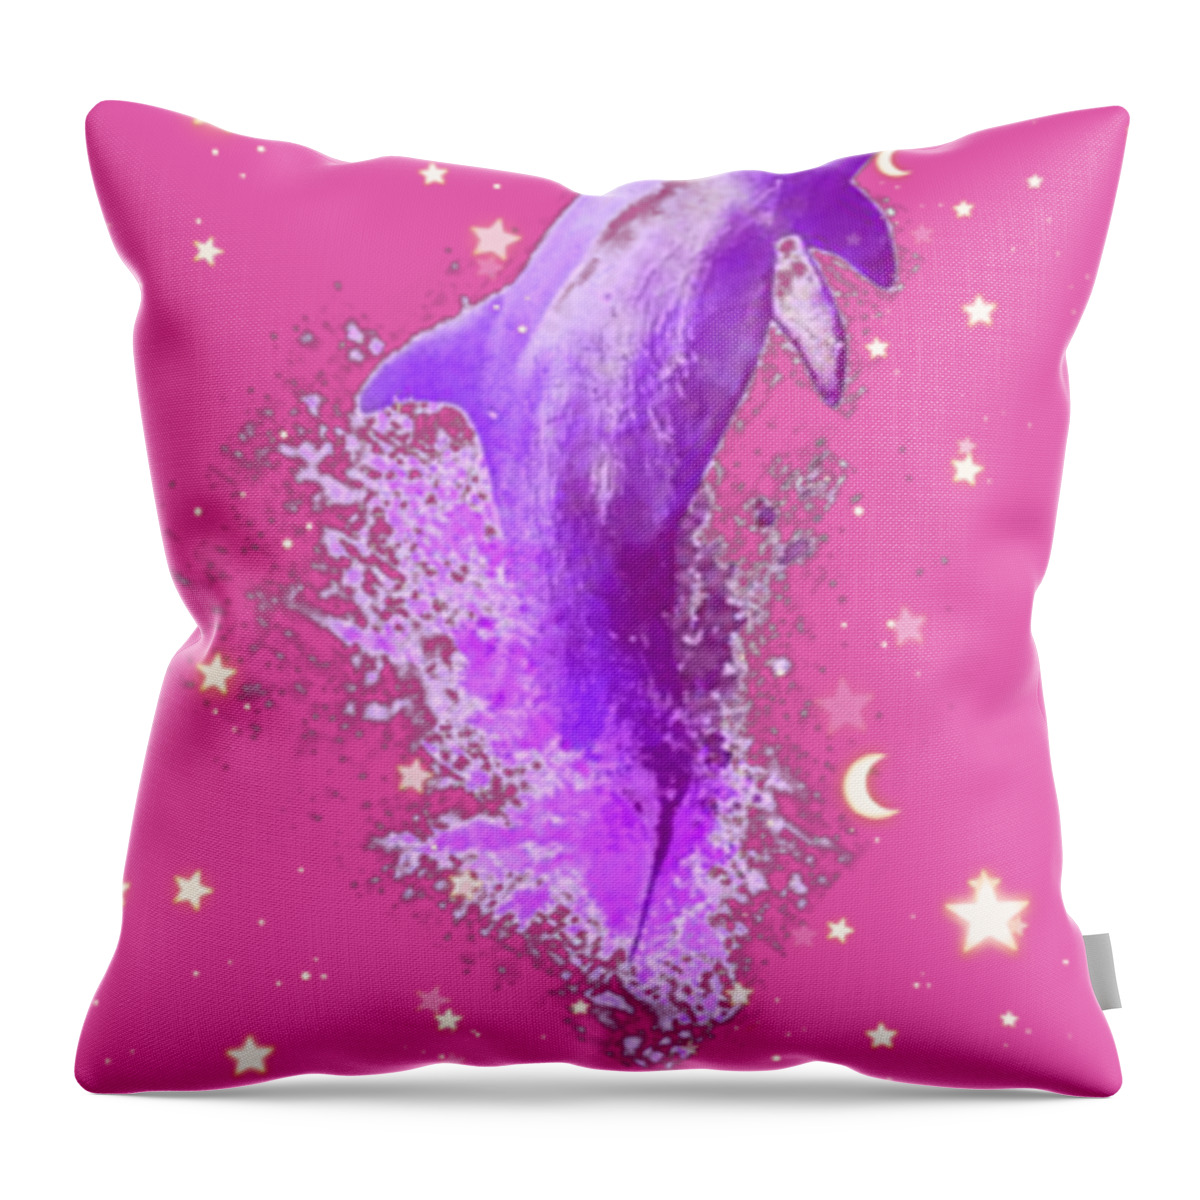 Sky Throw Pillow featuring the digital art SkY Dolphin Sunrise by Auranatura Art